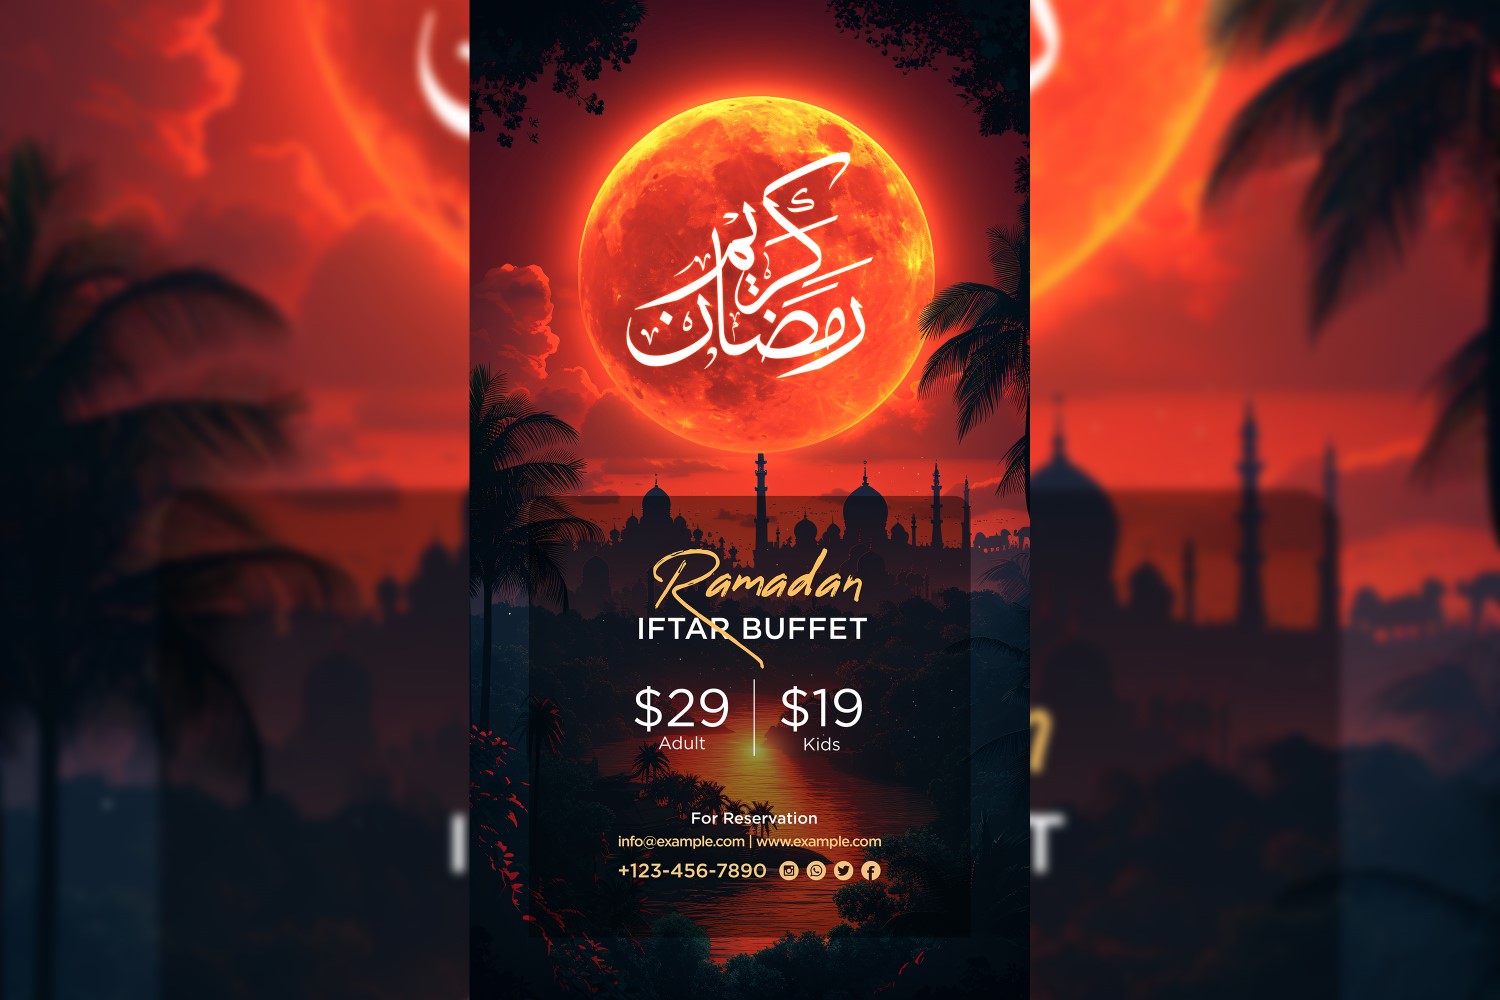 Ramadan Iftar Buffet Poster Design Template24